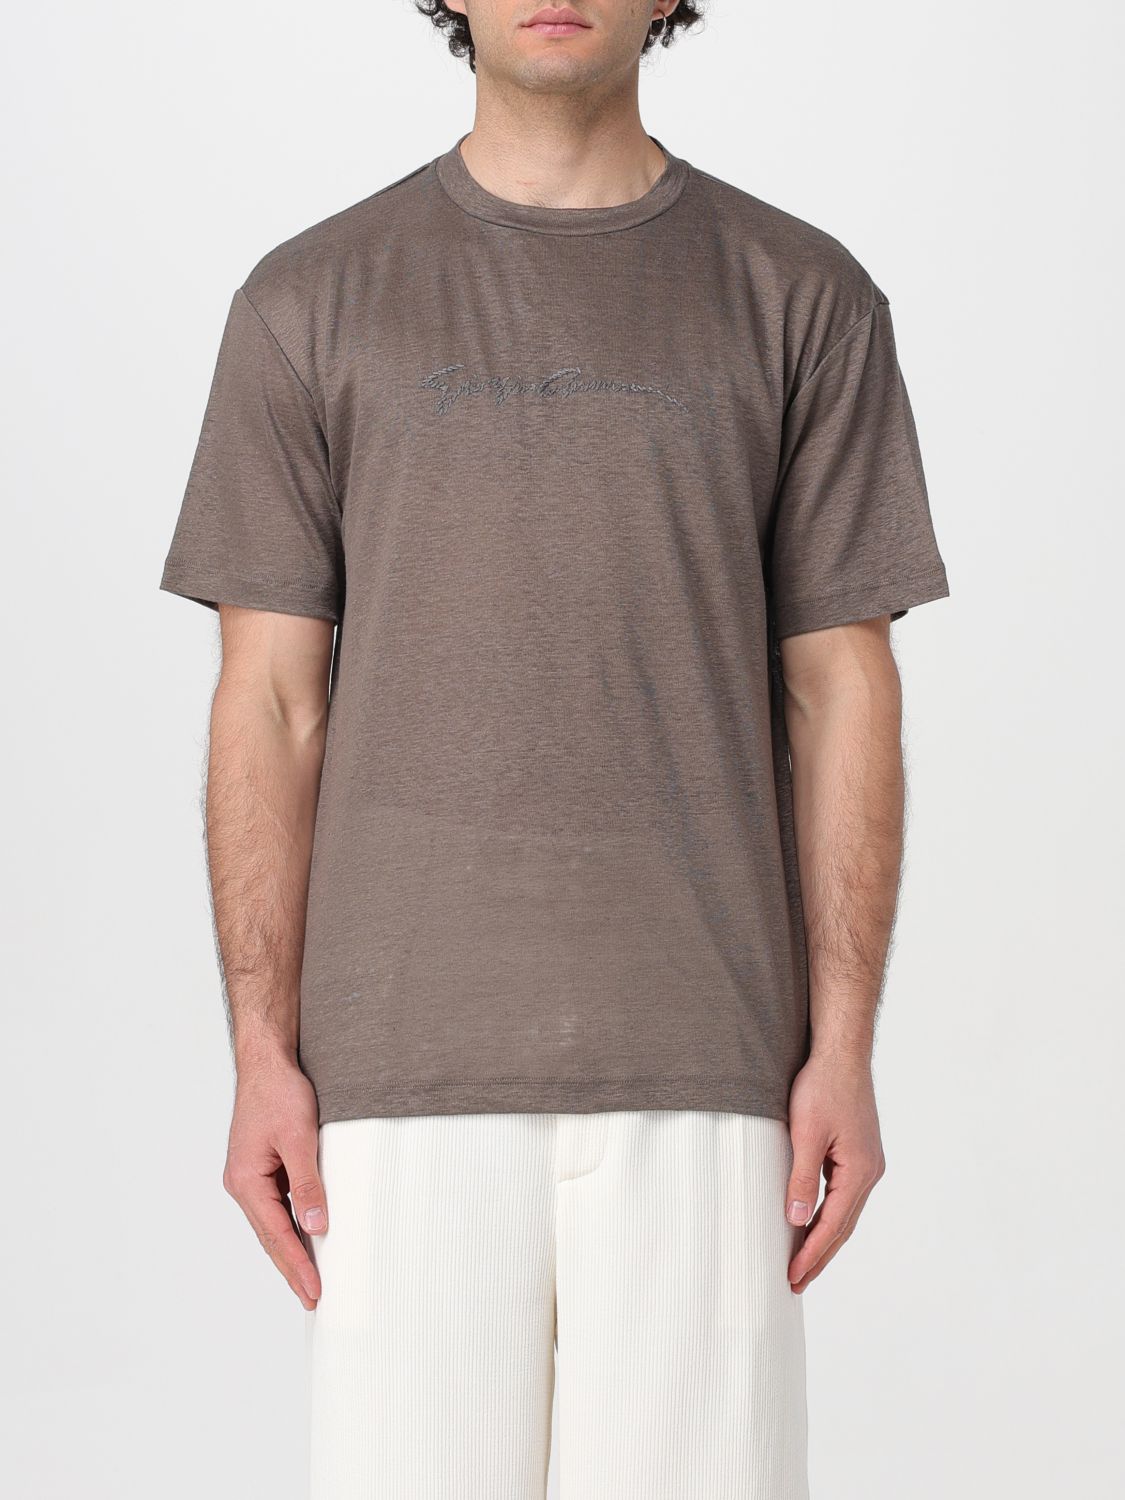 Giorgio Armani T-Shirt GIORGIO ARMANI Men color Dove Grey